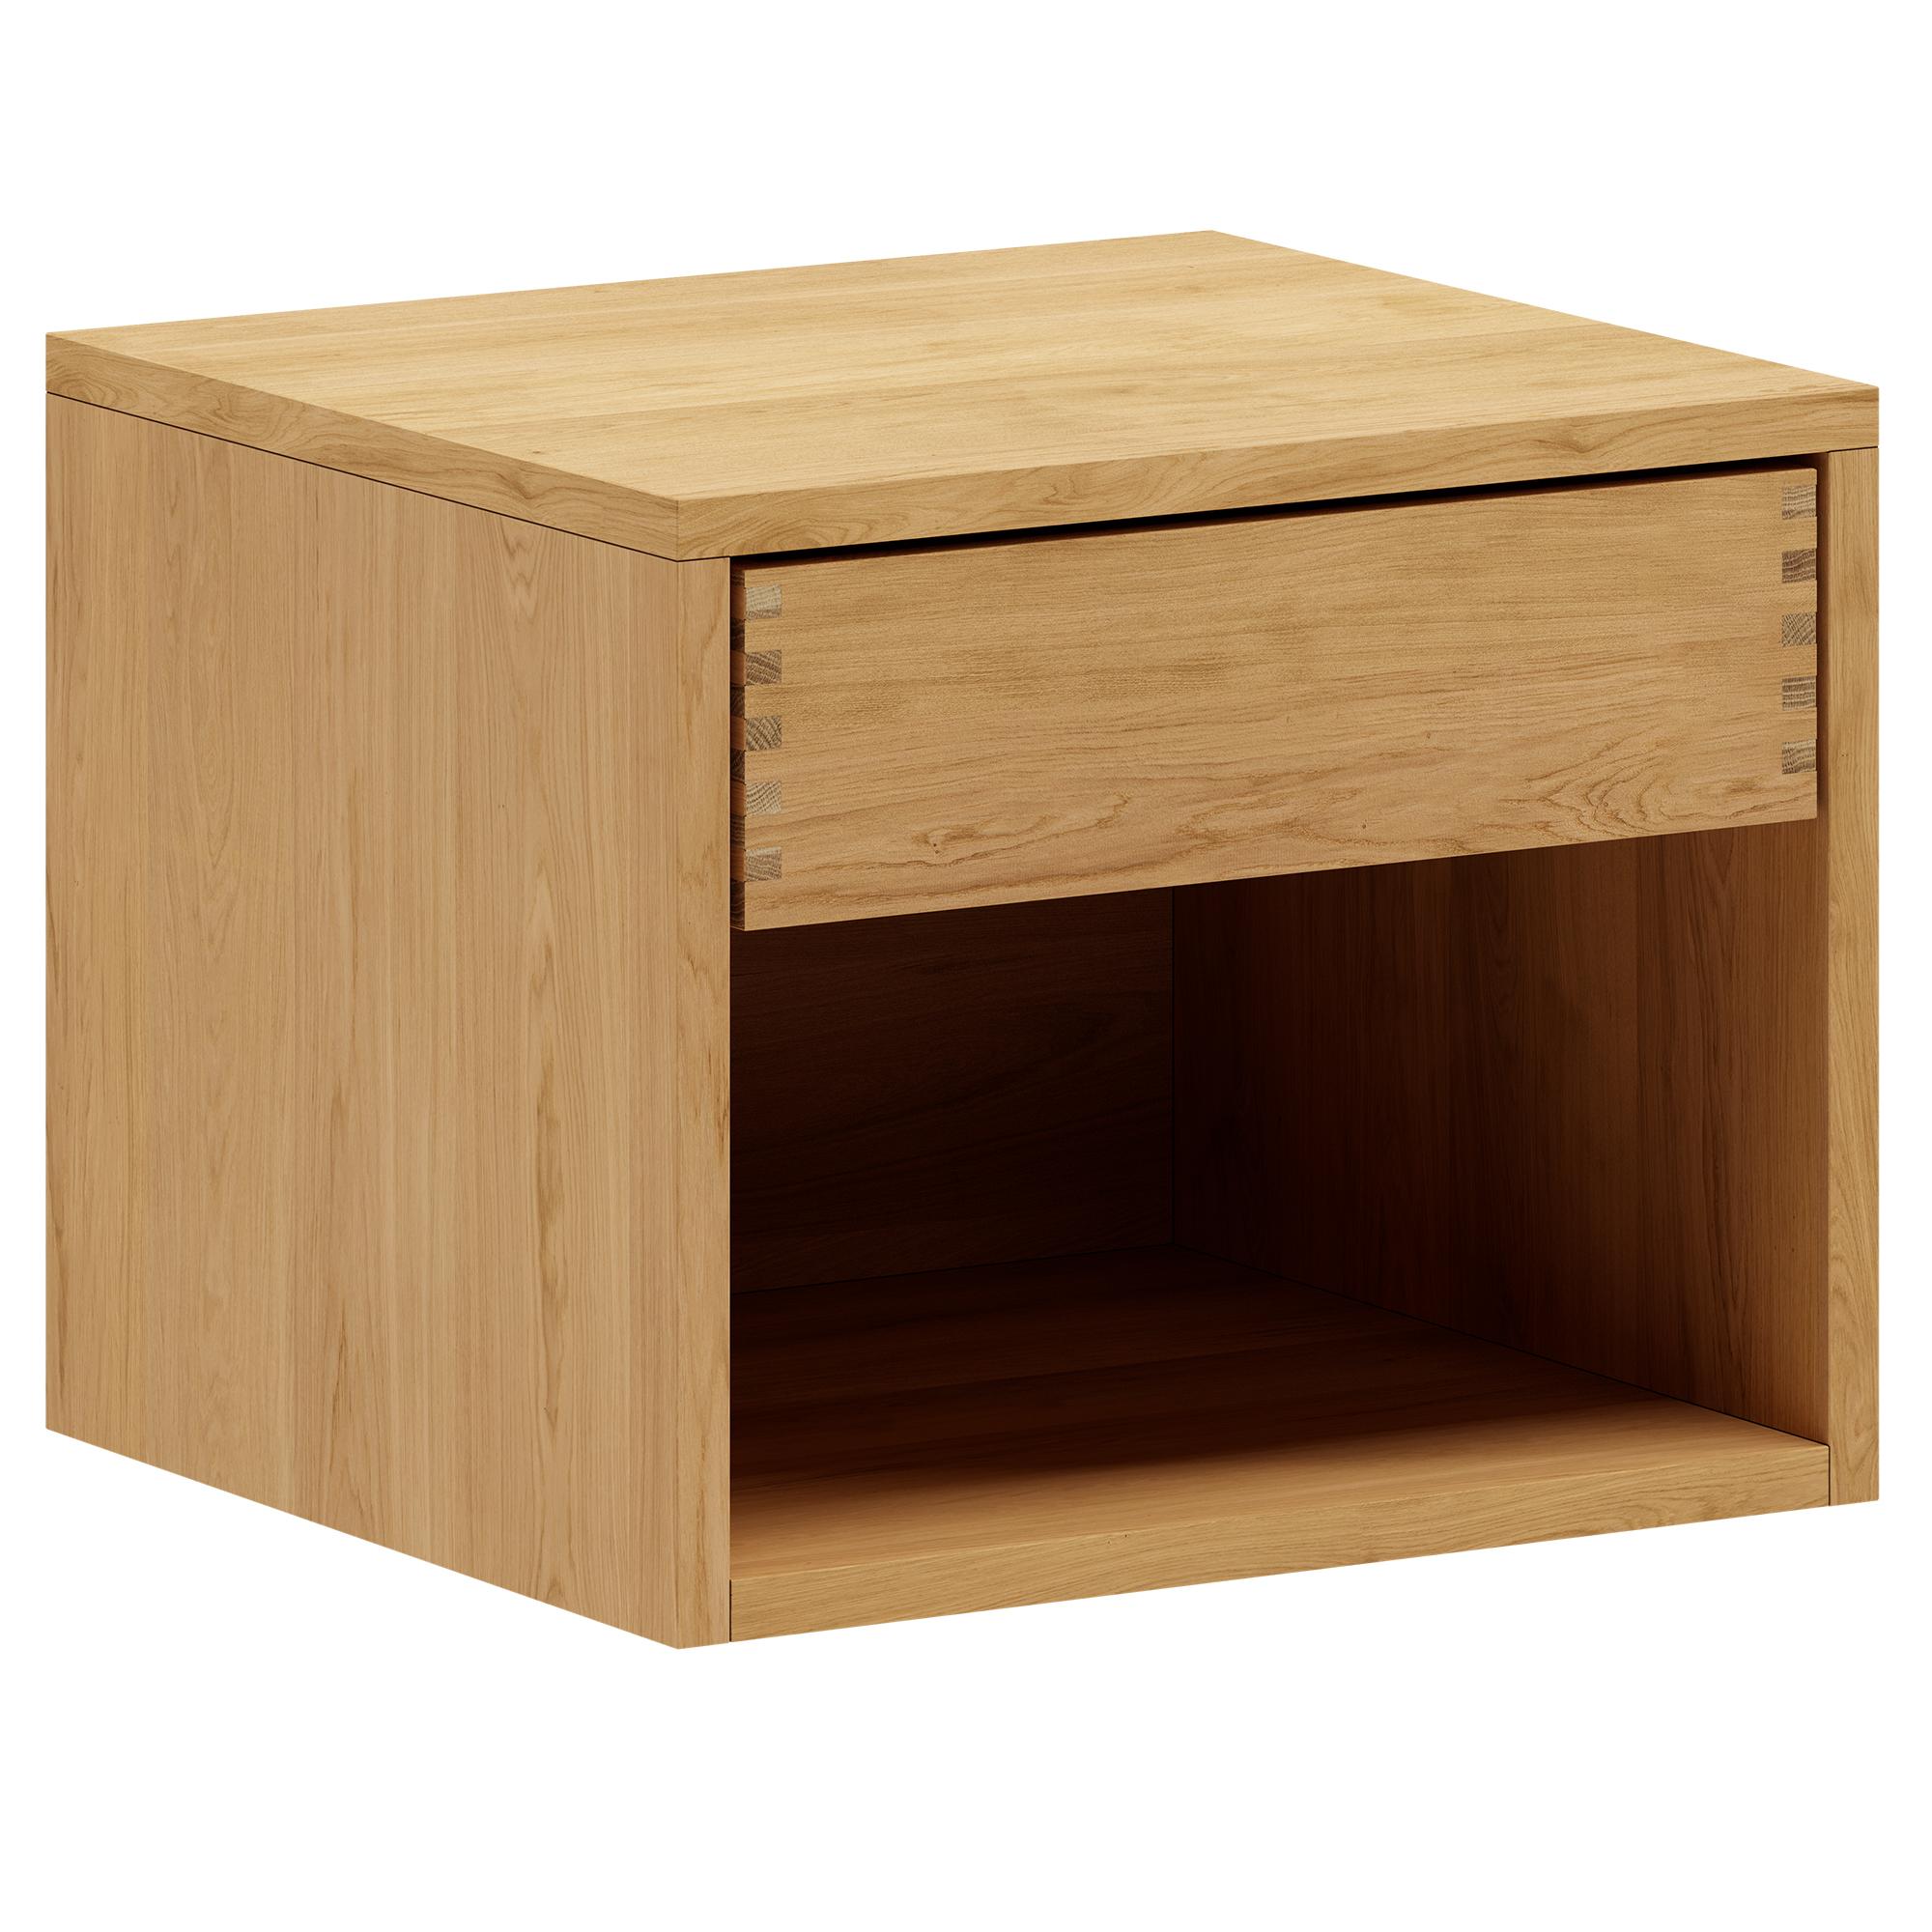 40 cm Just Wood Tischler Nachttisch mit 1 Schublade